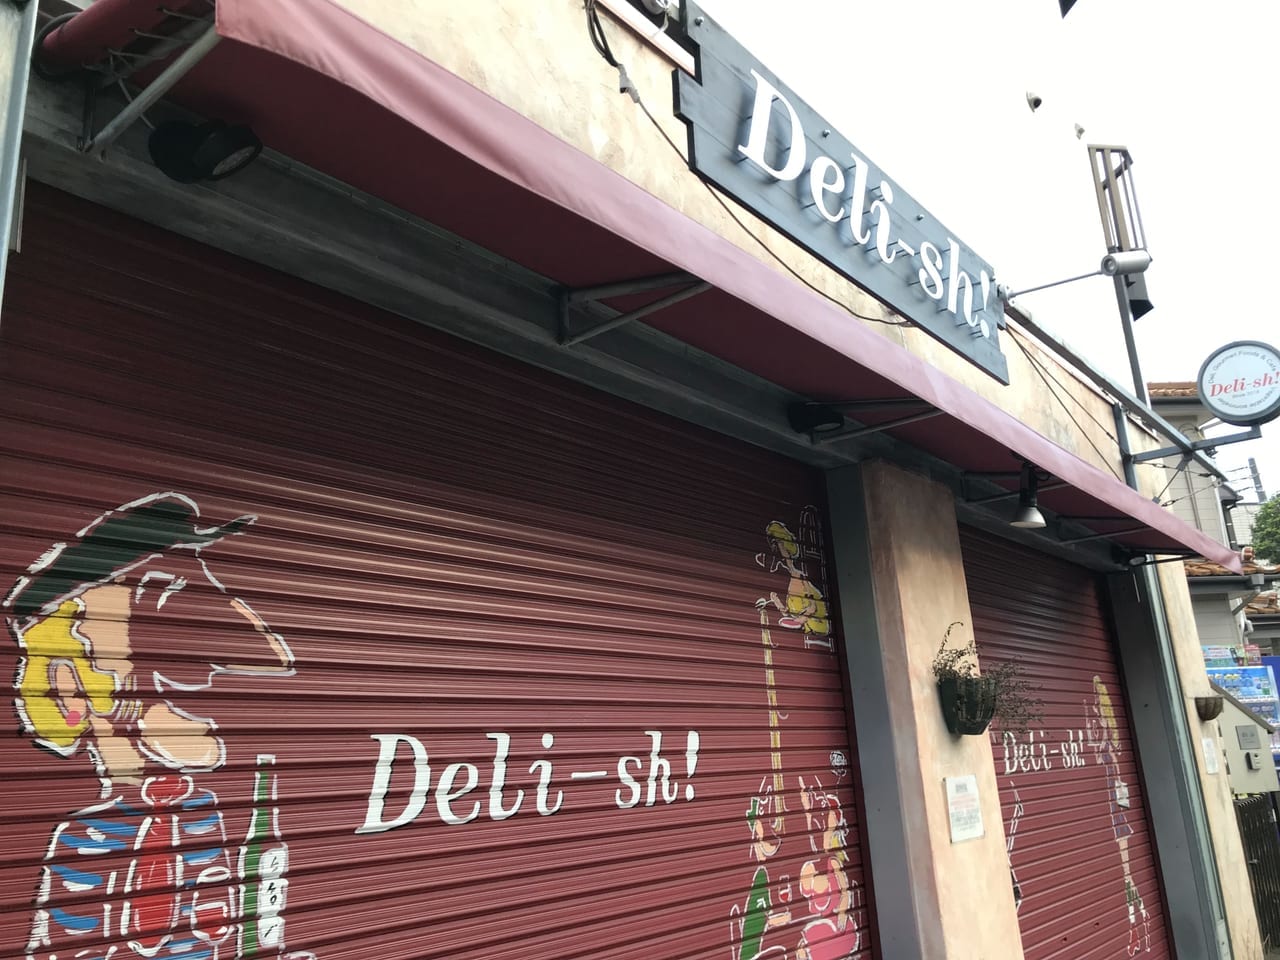 世田谷区中町上野毛Deli-sh デリッシュは2021年9月4日以降に営業再開します。